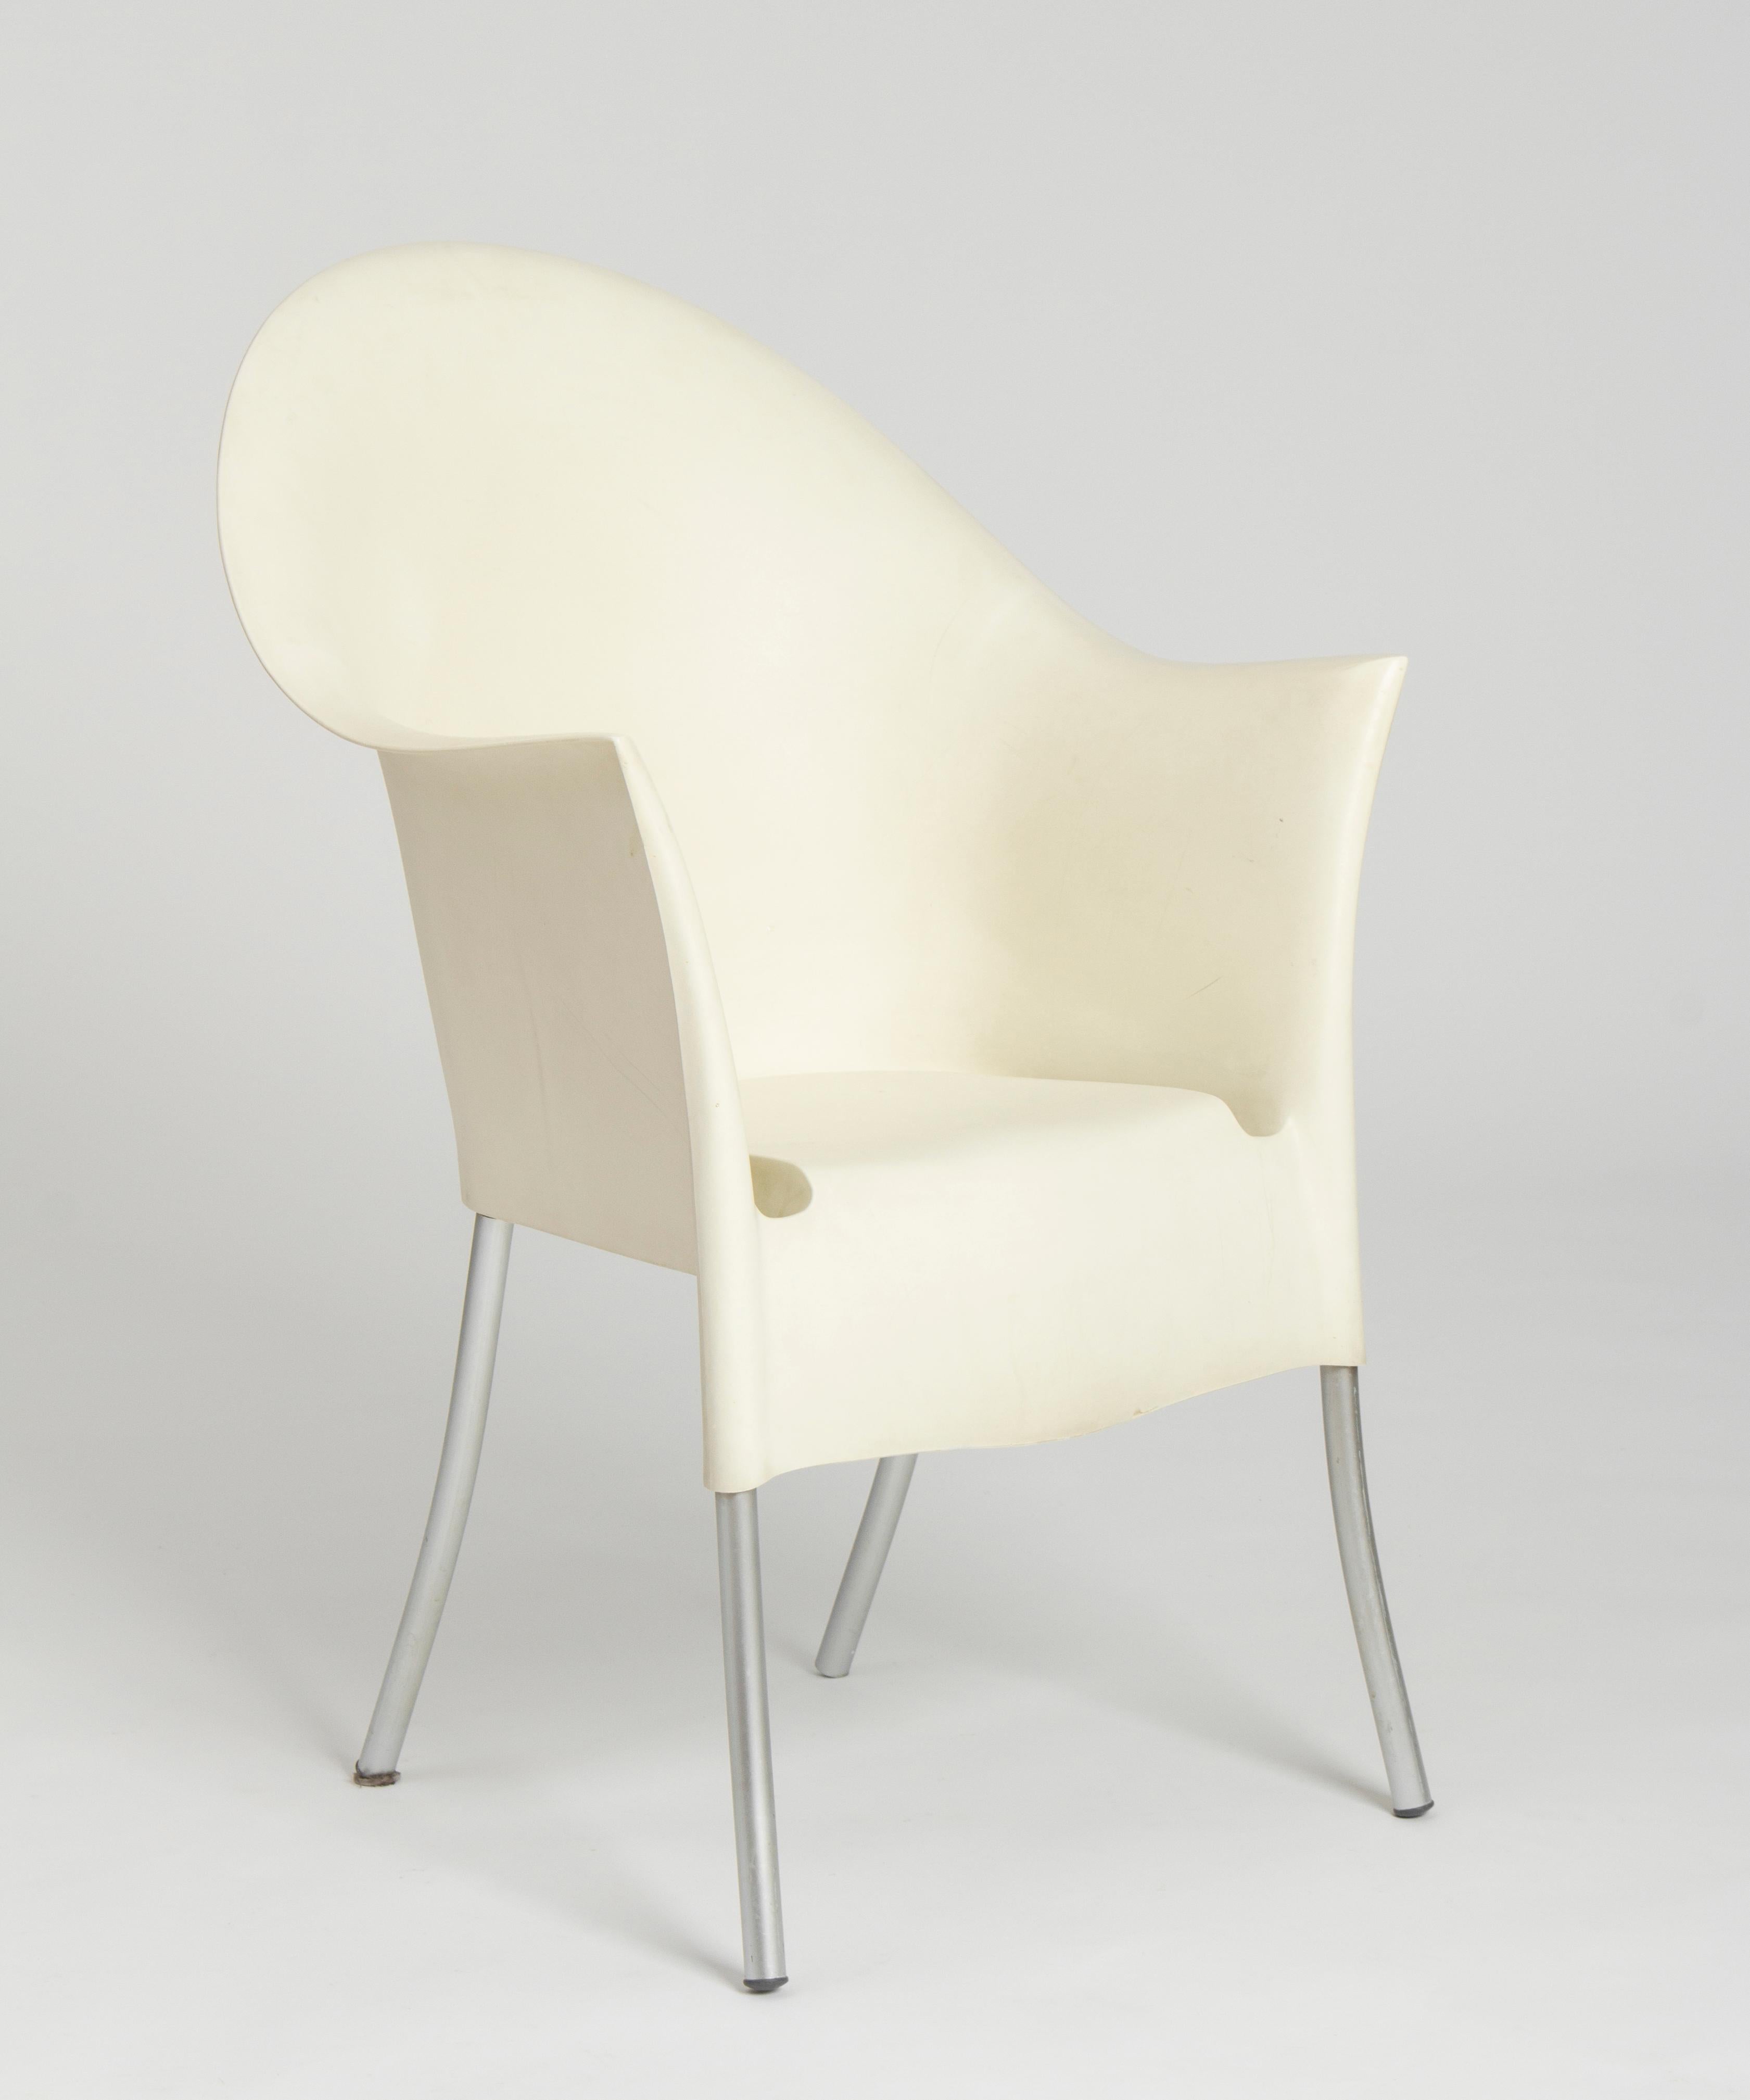 Le fauteuil Lord/One Garden a été conçu par Philippe Starck pour Driade.
Avec un excellent confort d'assise, la chaise de jardin Lord Yo a été conçue pour passer des heures agréables sur la terrasse ou dans votre jardin. Le fauteuil Lord Yo est une